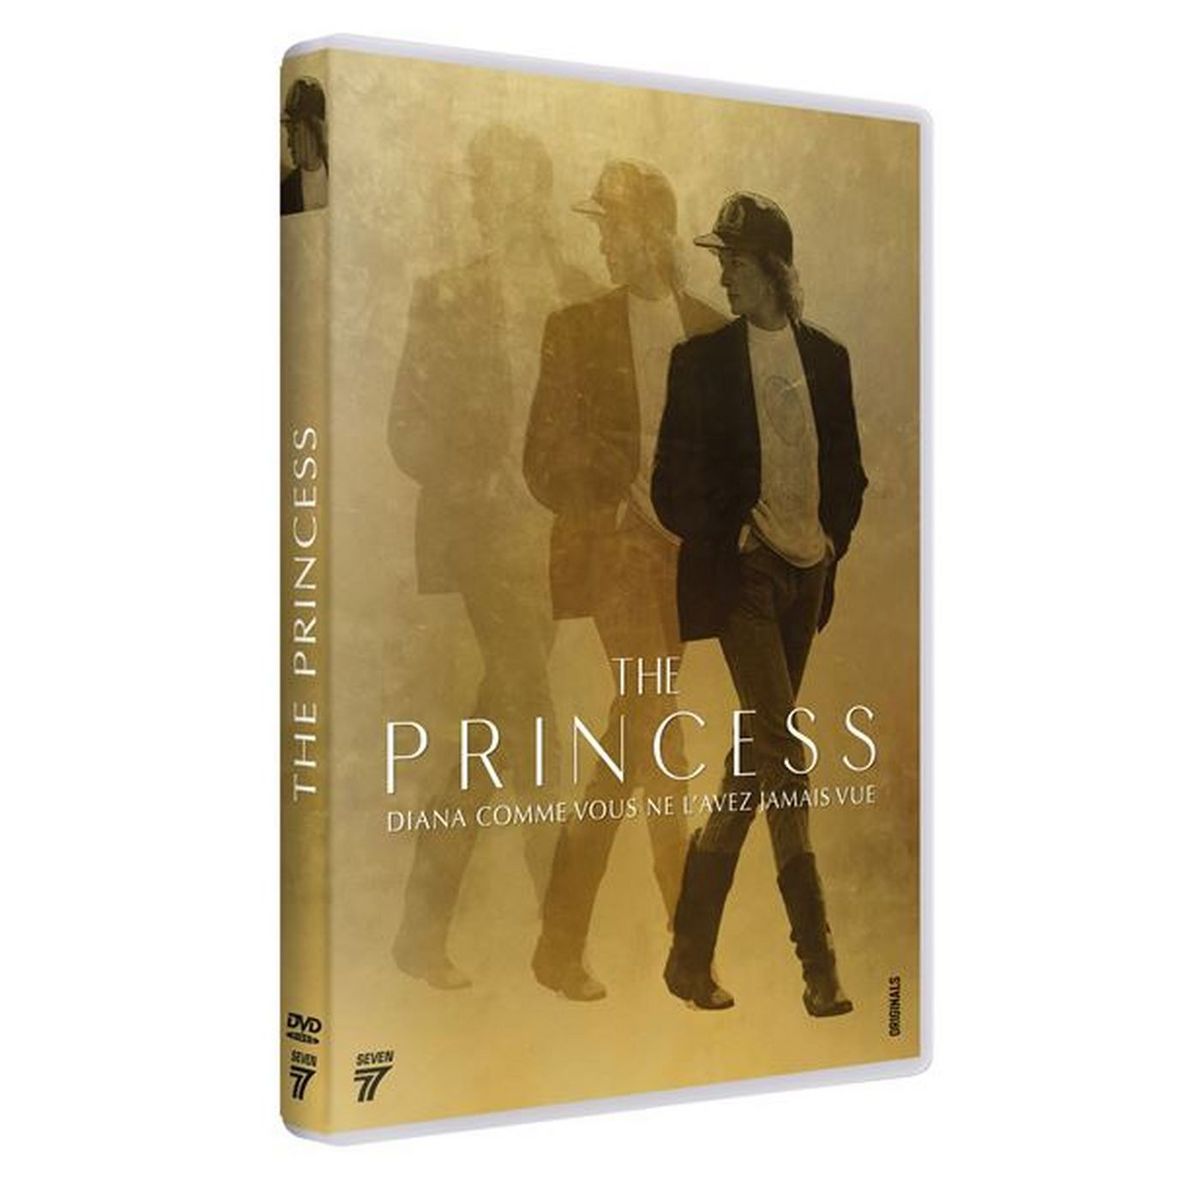 The Princess DVD